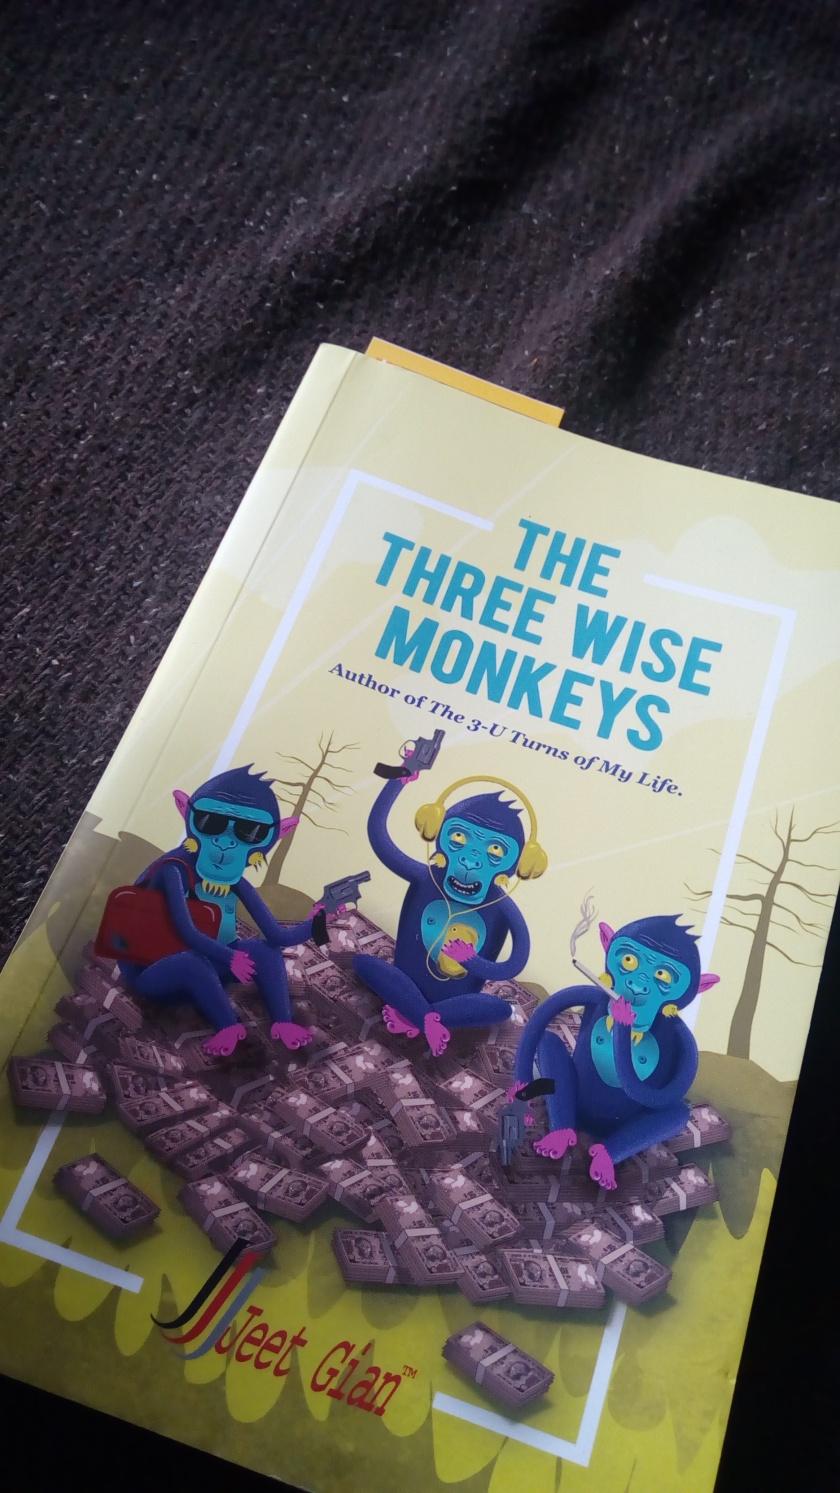 http://www.amazon.in/Three-Wise-Monkeys-Jeet-Gian/dp/9352016181/